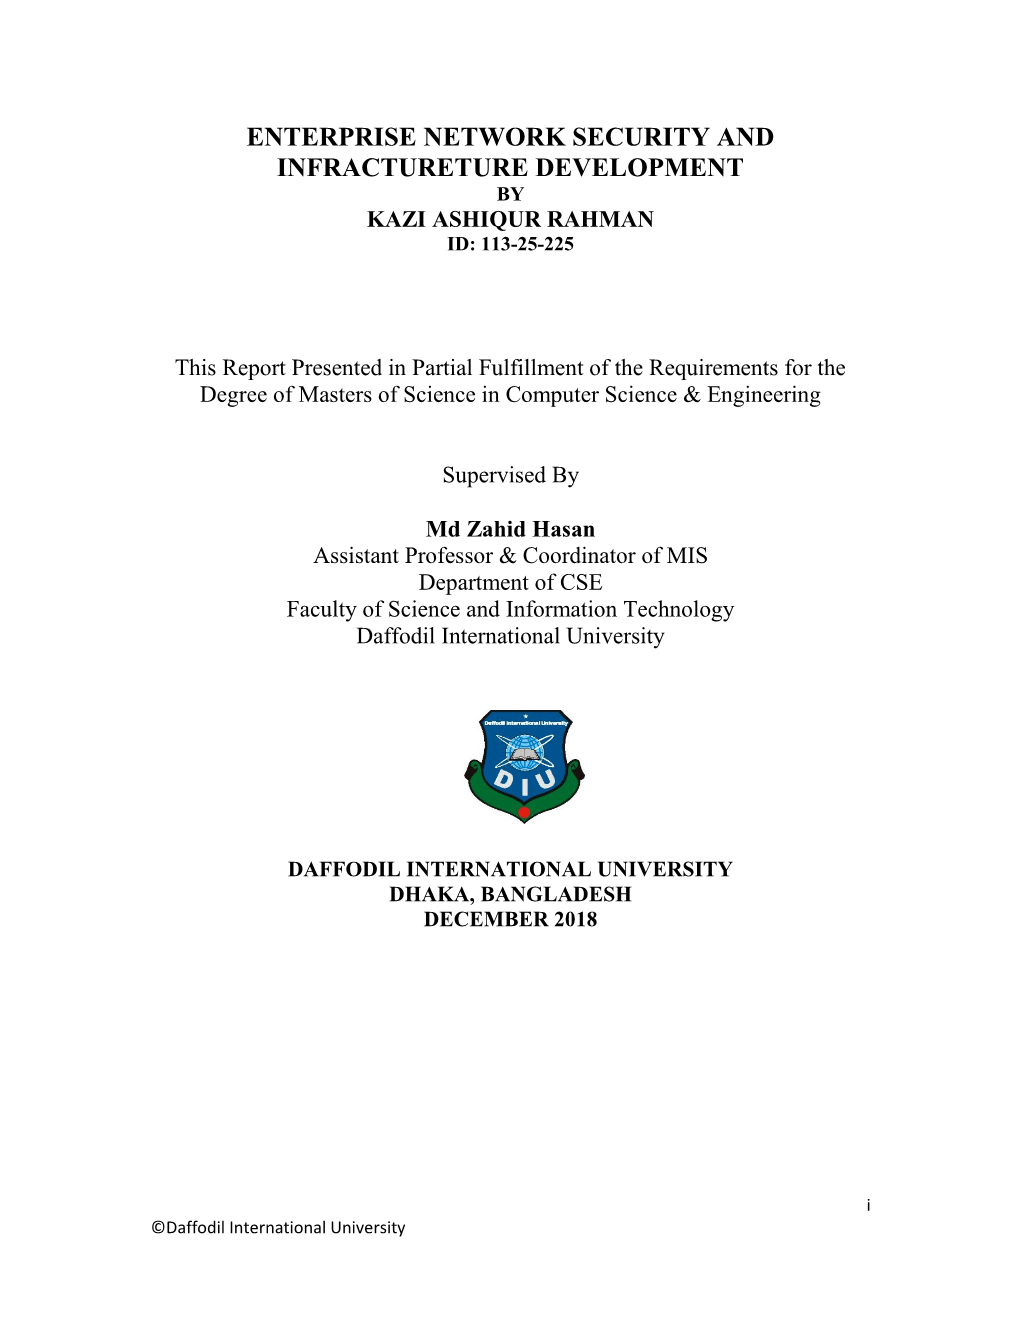 Enterprise Network Security and Infractureture Development by Kazi Ashiqur Rahman Id: 113-25-225